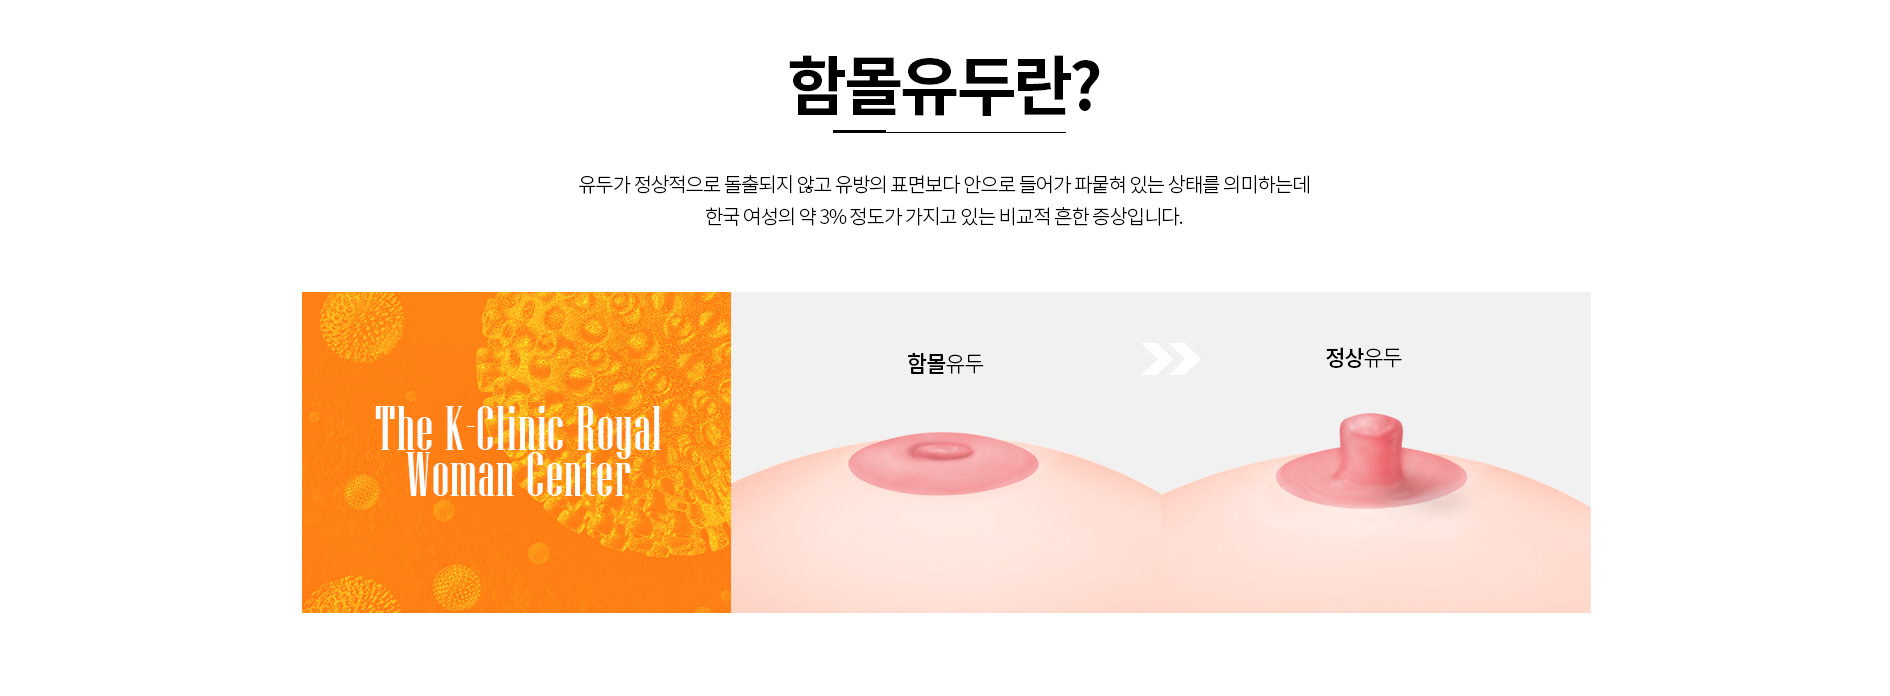 함몰유두란? 유두가 정상적으로 돌출되지 않고 유방의 표면보다 안으로 들어가 파뭍혀 있는 상태를 의미하는데 한국 여성의 약 3% 정도가 가지고 있는 비교적 흔한 증상입니다.